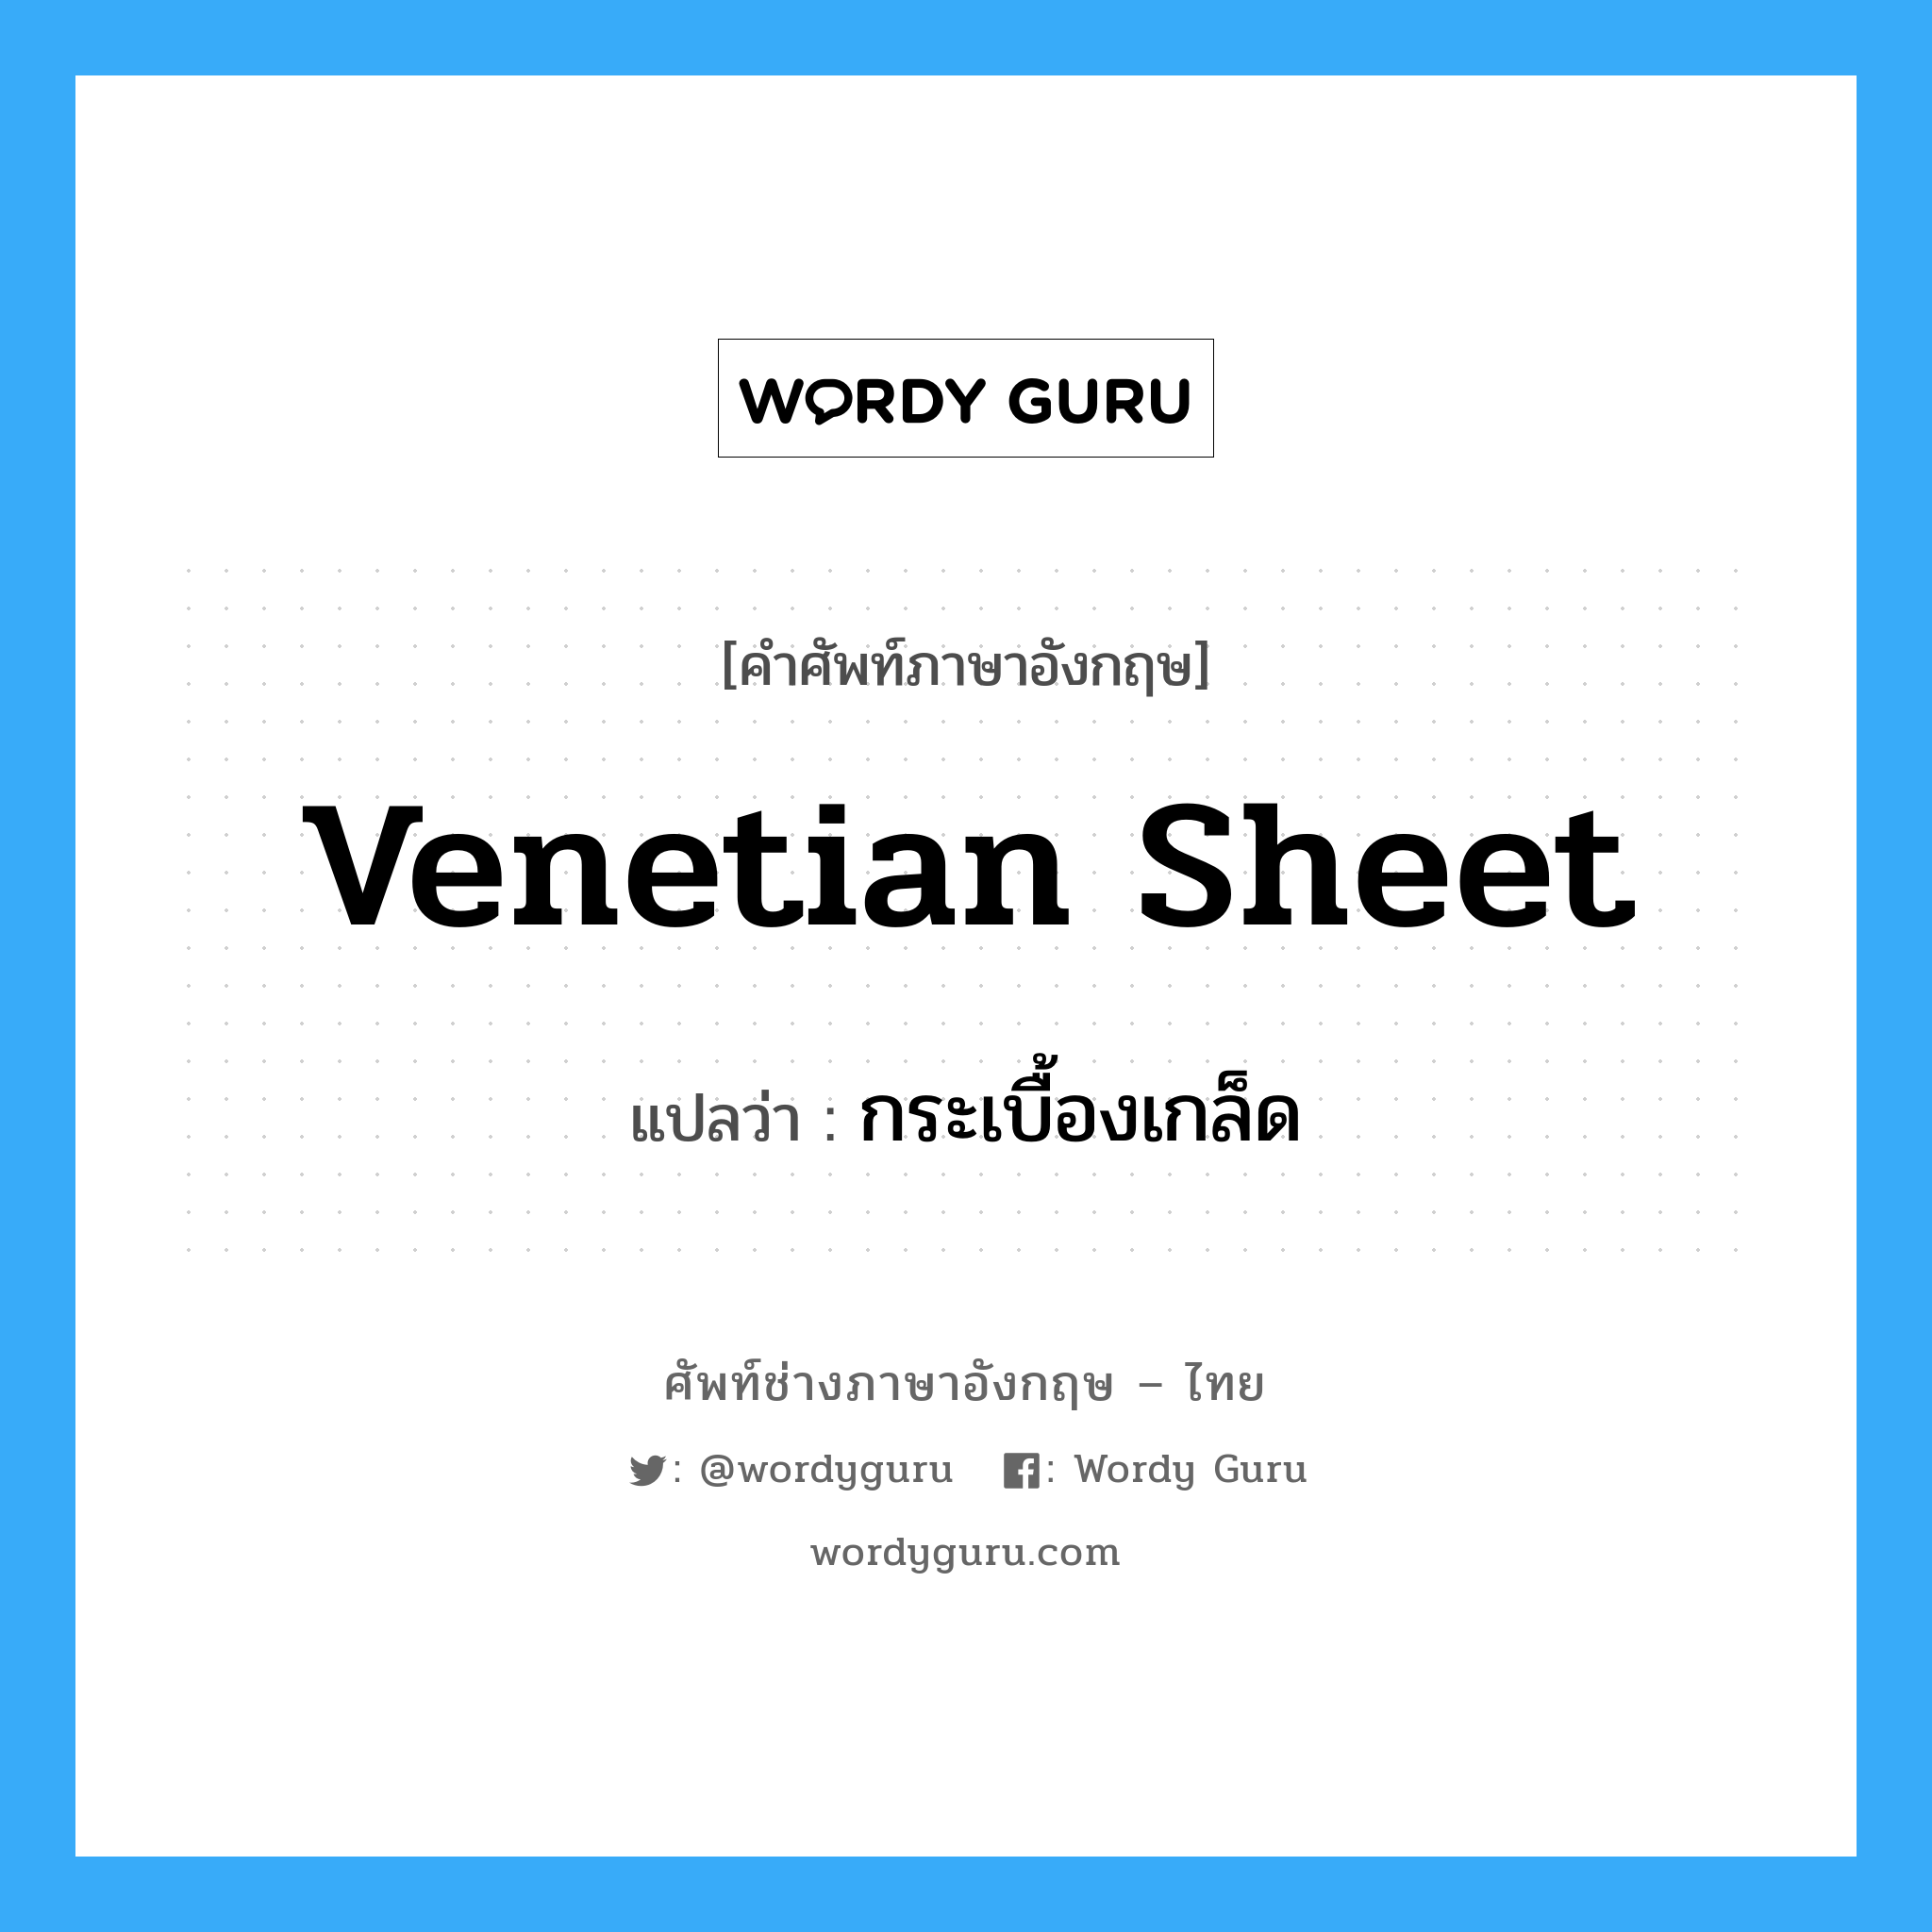 venetian sheet แปลว่า?, คำศัพท์ช่างภาษาอังกฤษ - ไทย venetian sheet คำศัพท์ภาษาอังกฤษ venetian sheet แปลว่า กระเบื้องเกล็ด